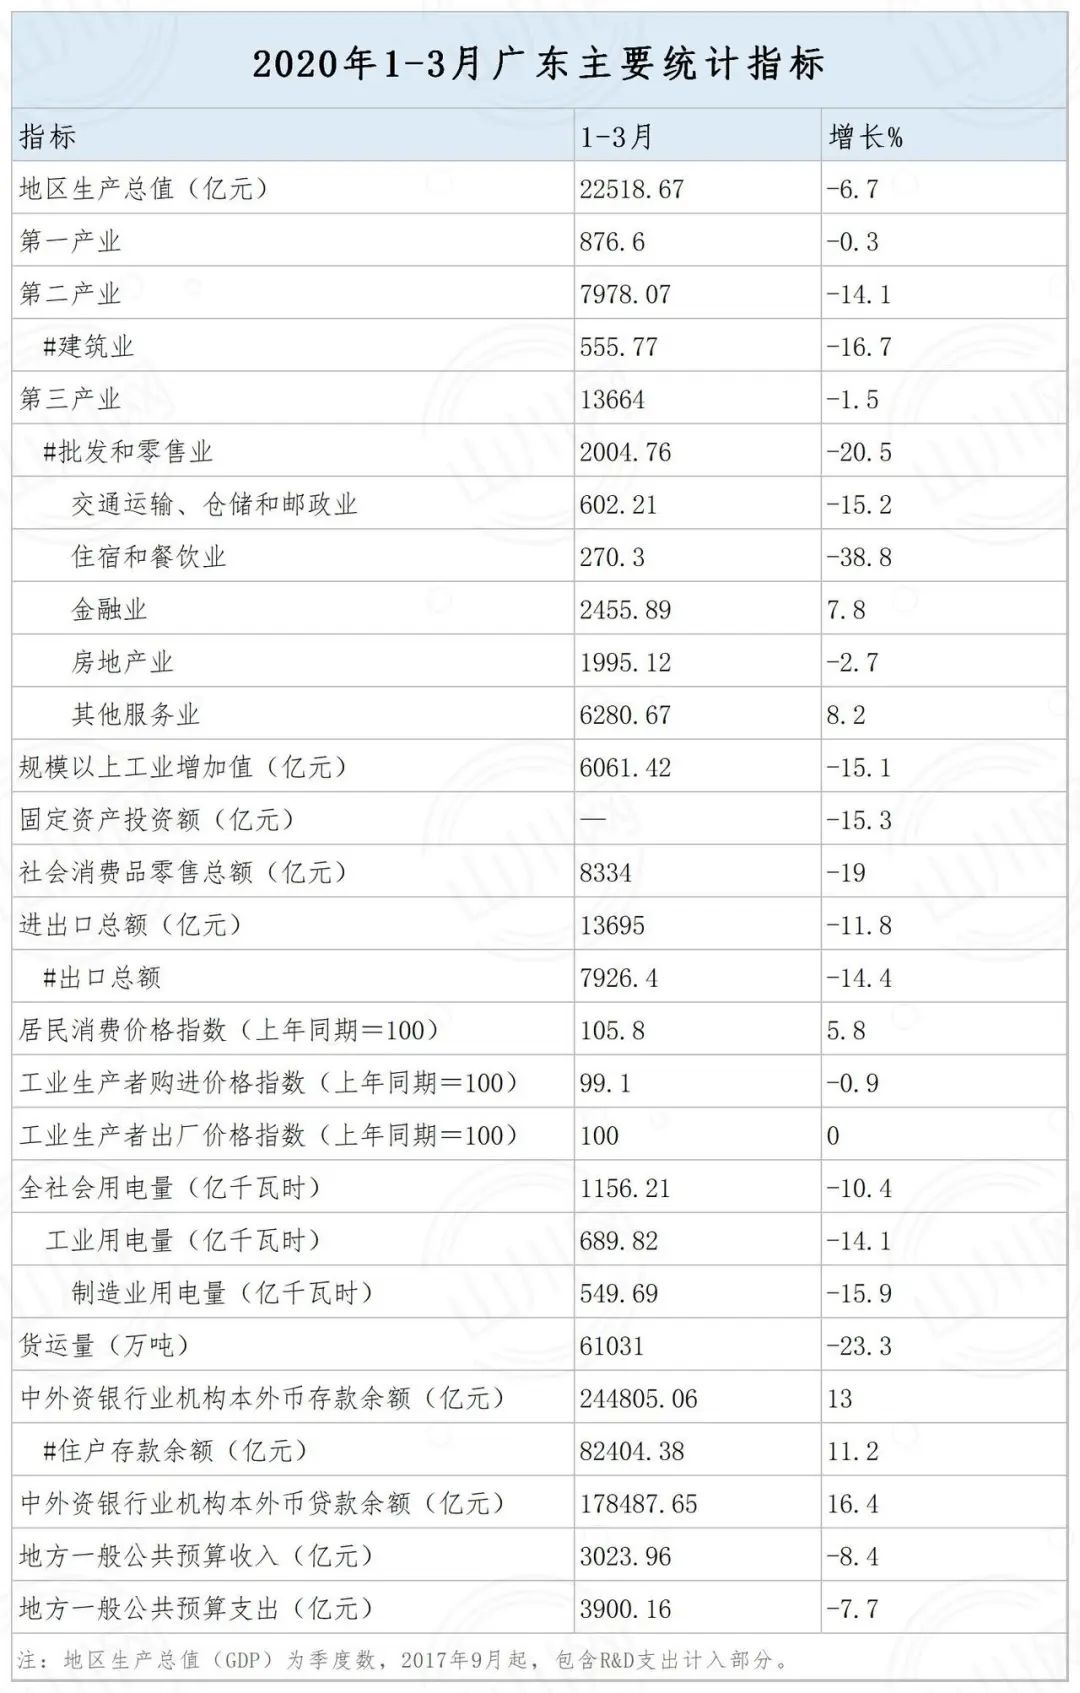 河源2020gdp排名_广东21地市2020年GDP陆续公布,河源排名第...